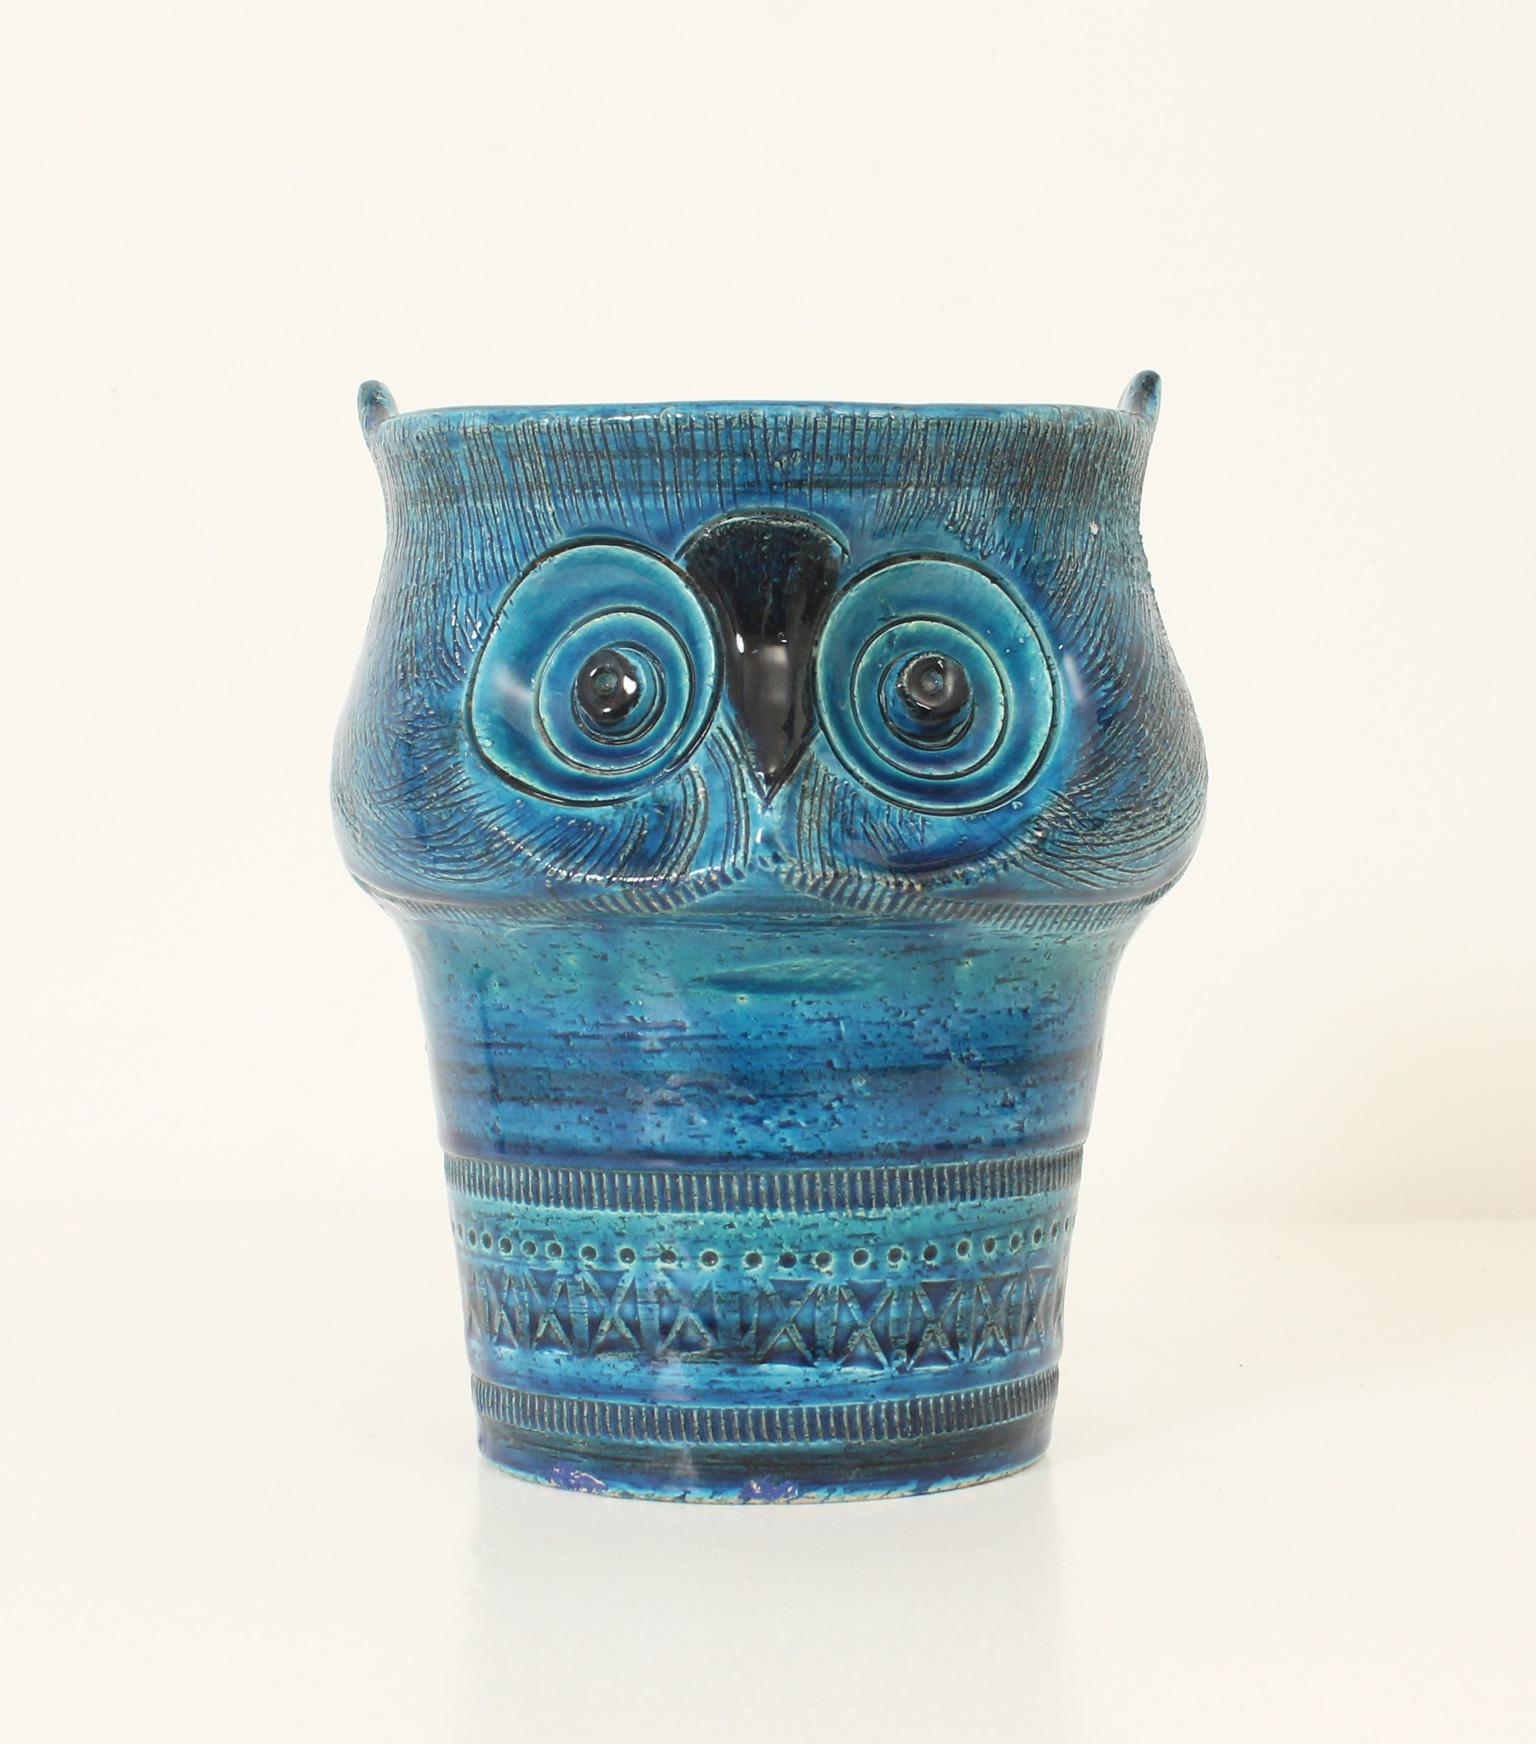 Hibou en céramique réalisé par Aldo Londi dans le cadre de la collection Blue Rimini pour Bitossi, Italie, années 1960. Céramique émaillée bleu et turquoise avec motif géométrique sculpté.